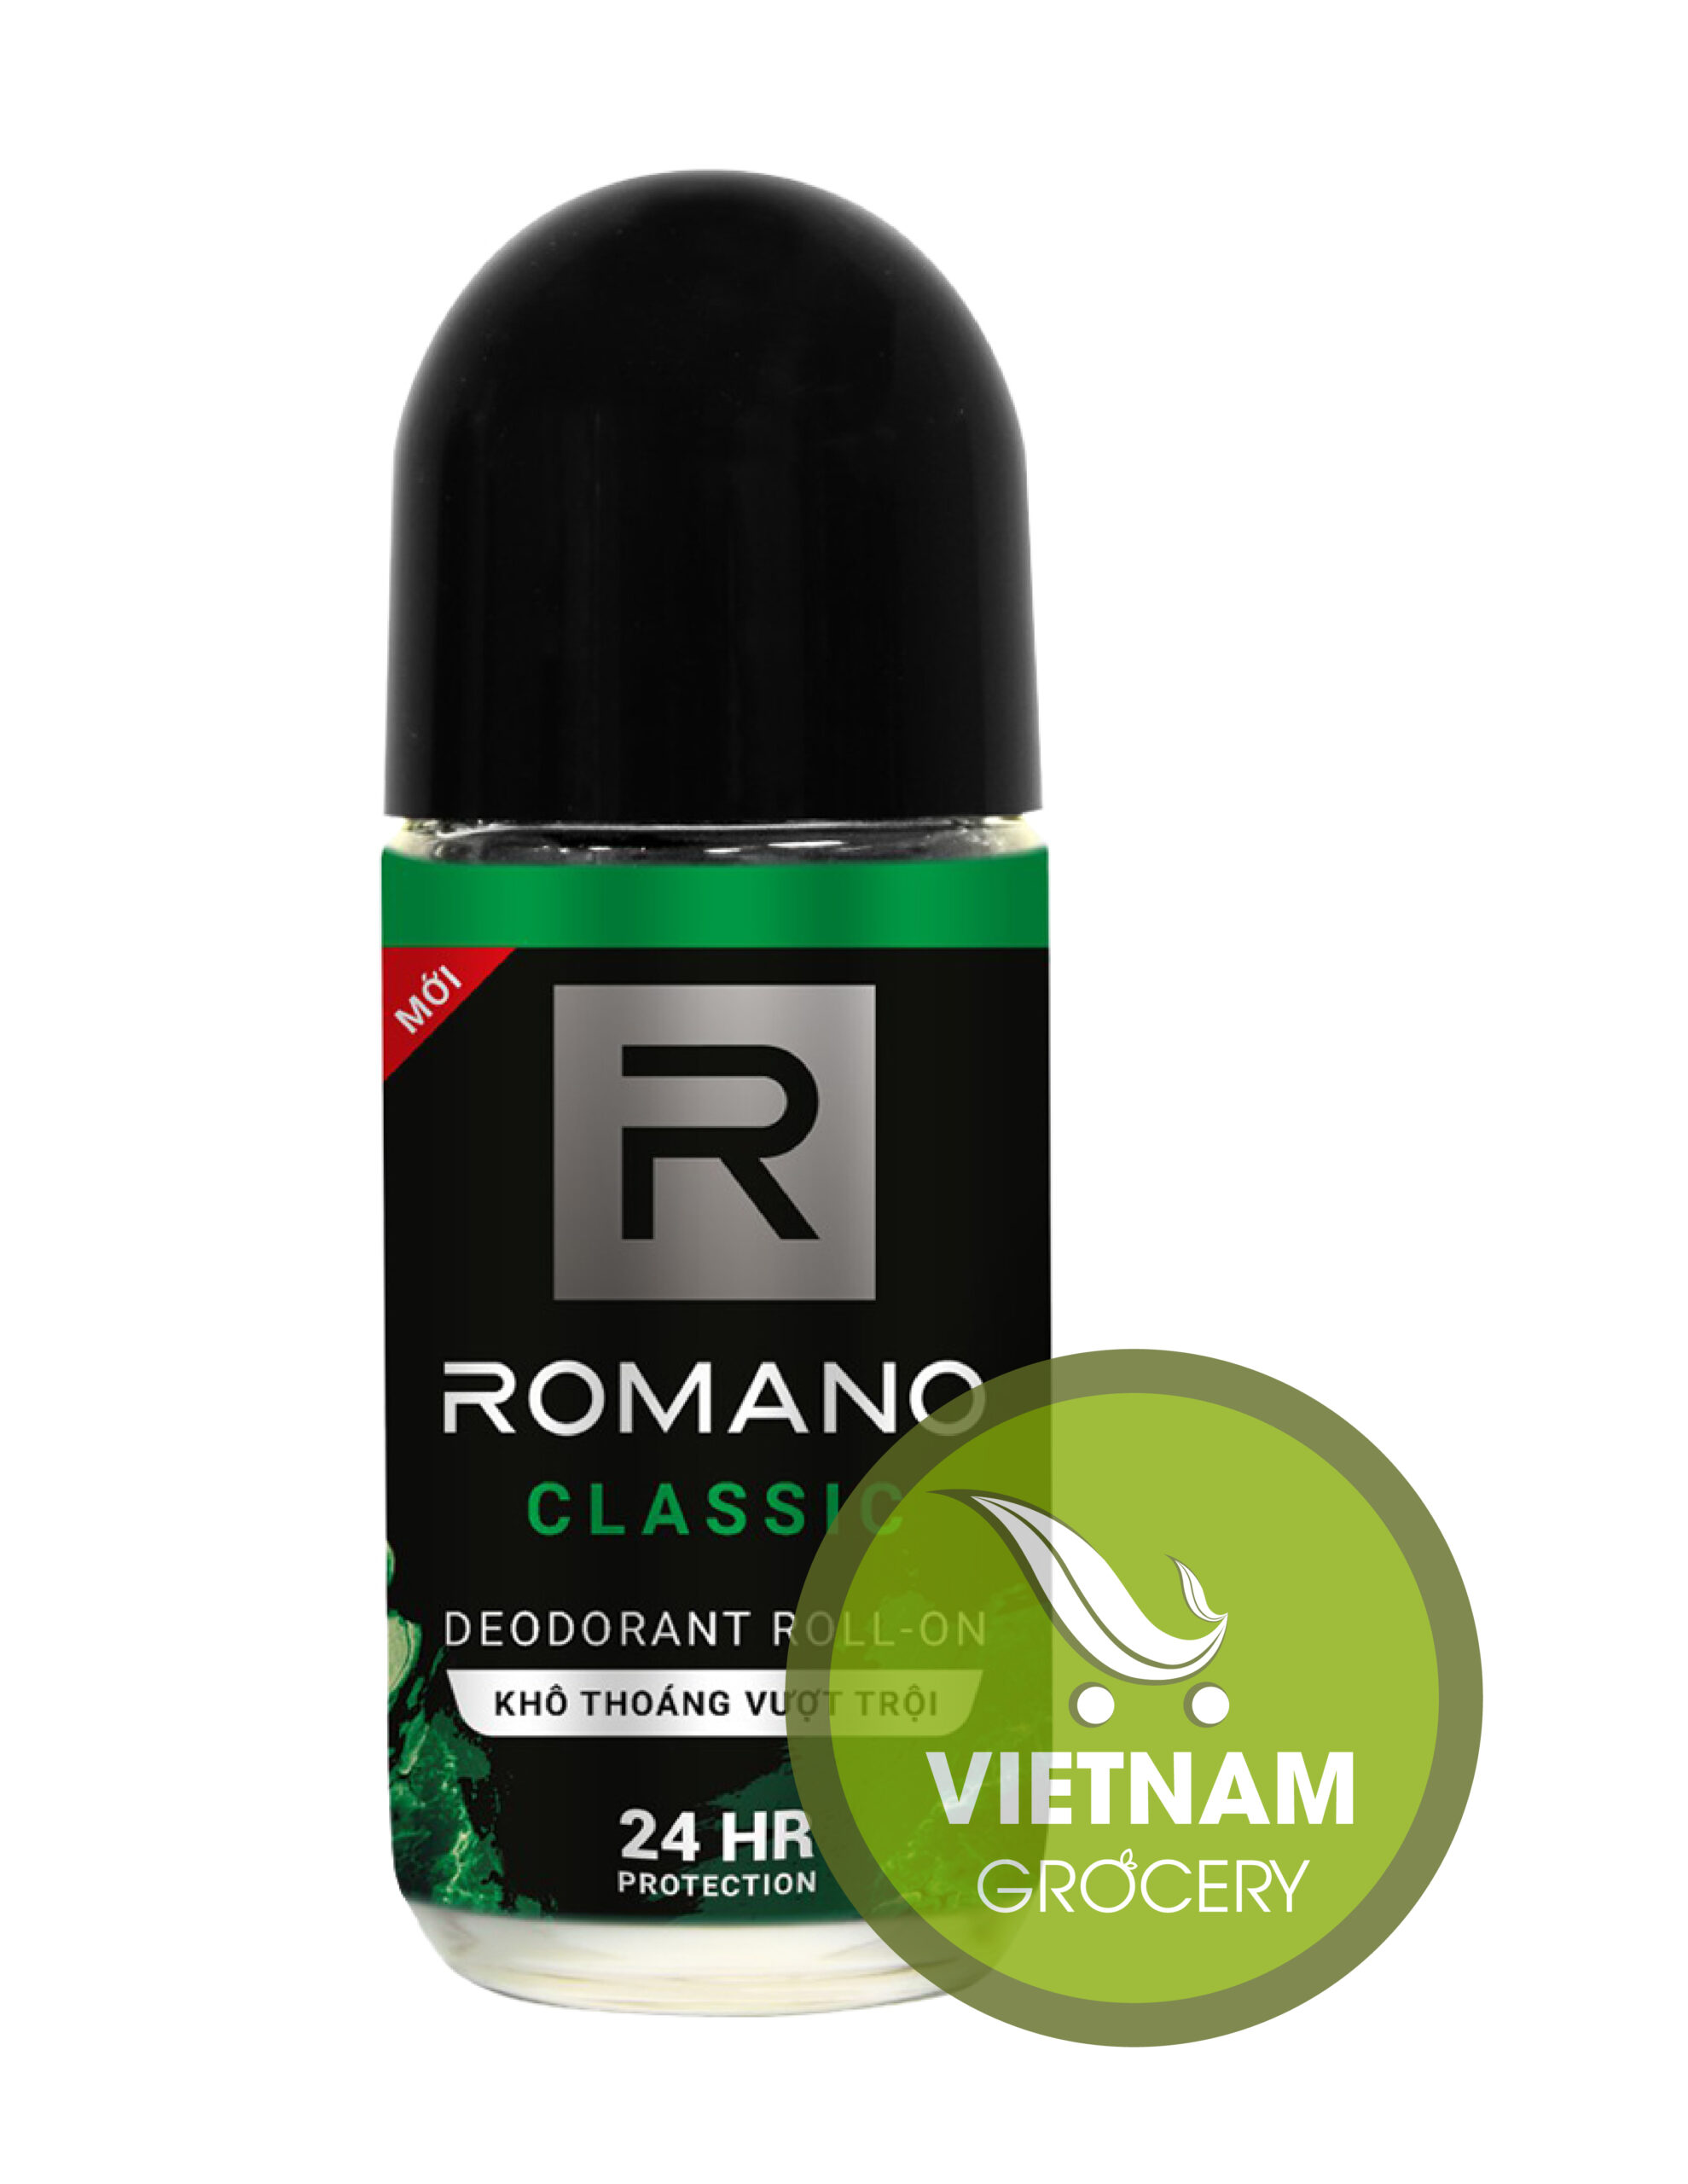 Romanoo Classic For Men Deodorant